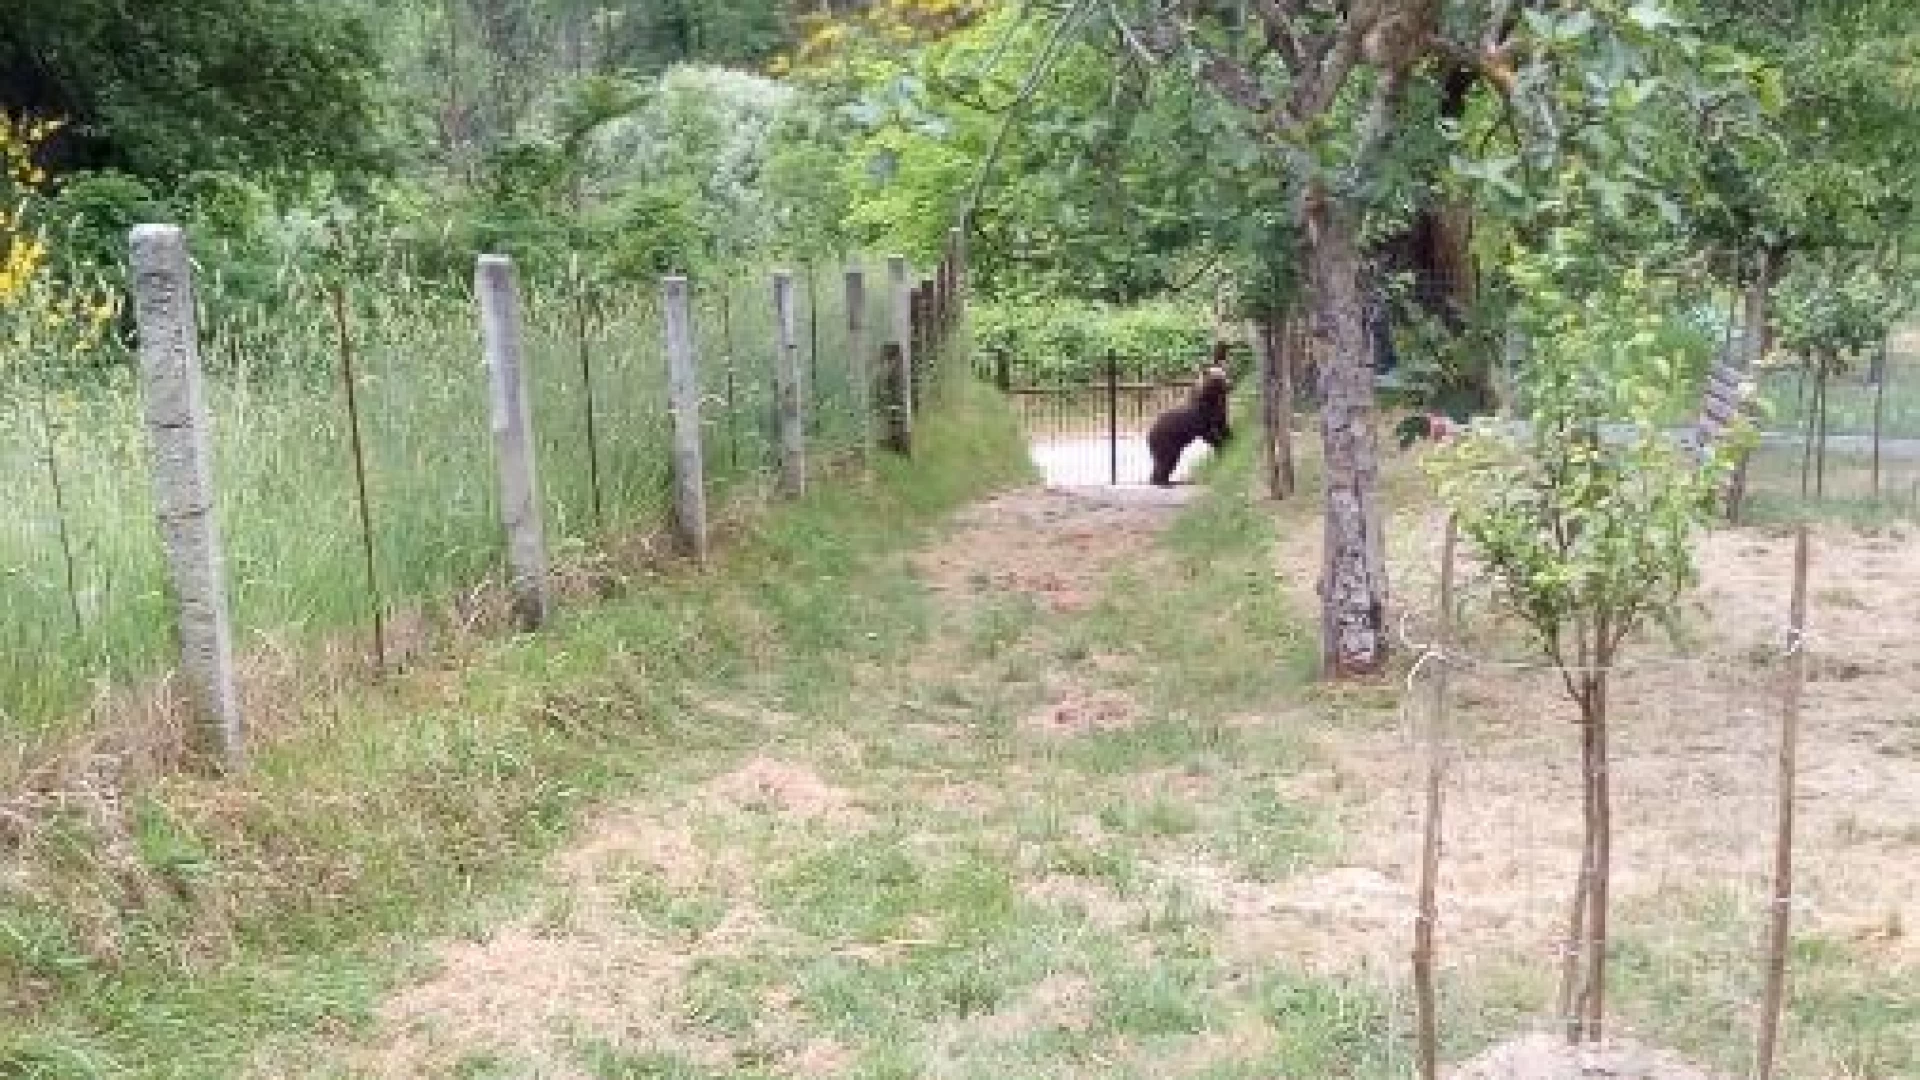 Colli a Volturno: cucciolo di orso avvistato nella parte alta del paese tra Santa Giusta e Casali. In atto controlli dei Carabinieri Forestali.